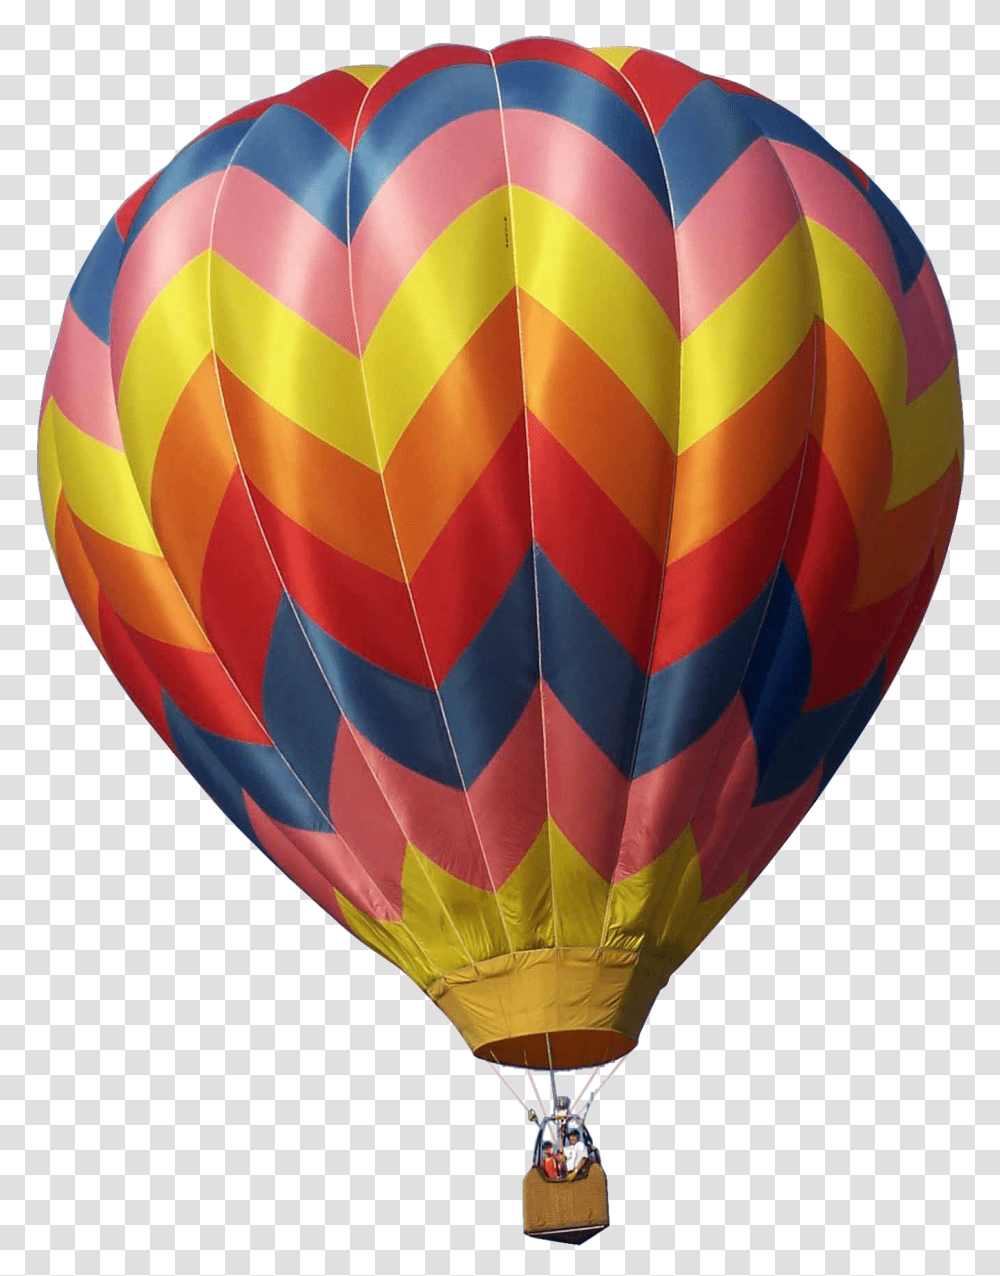 Air Balloon Image Download, Hot Air Balloon, Aircraft, Vehicle, Transportation Transparent Png